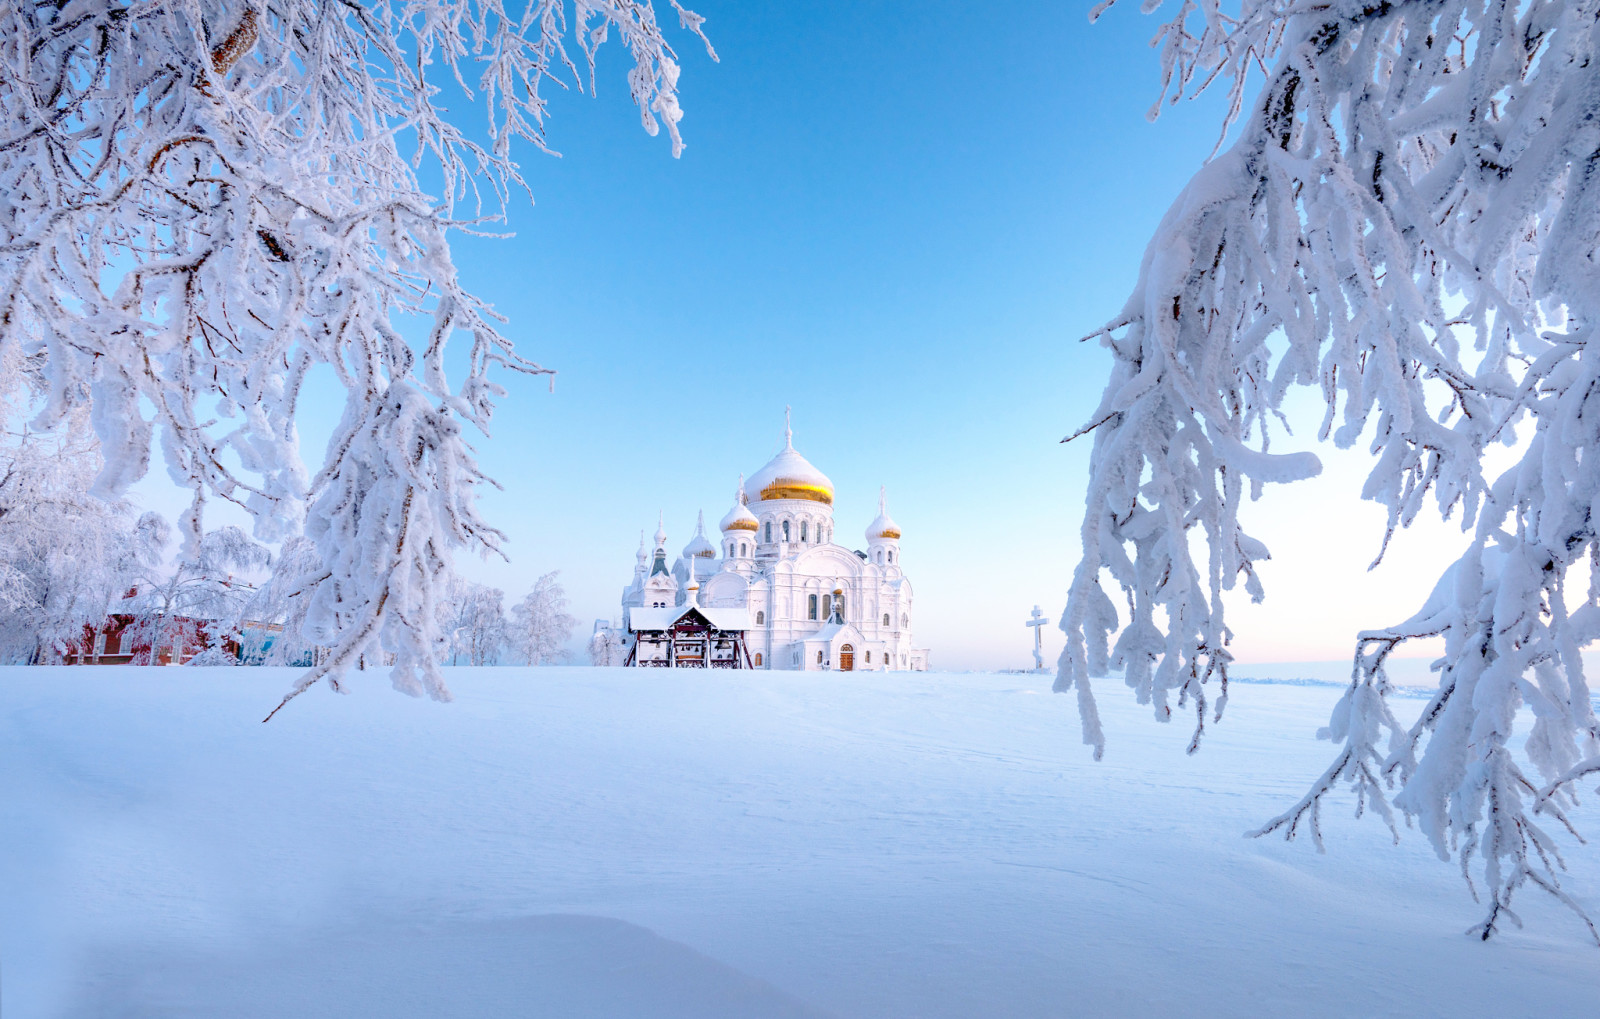 雪, 冬季, 俄国, 乌拉尔, 贝洛戈尔斯基修道院